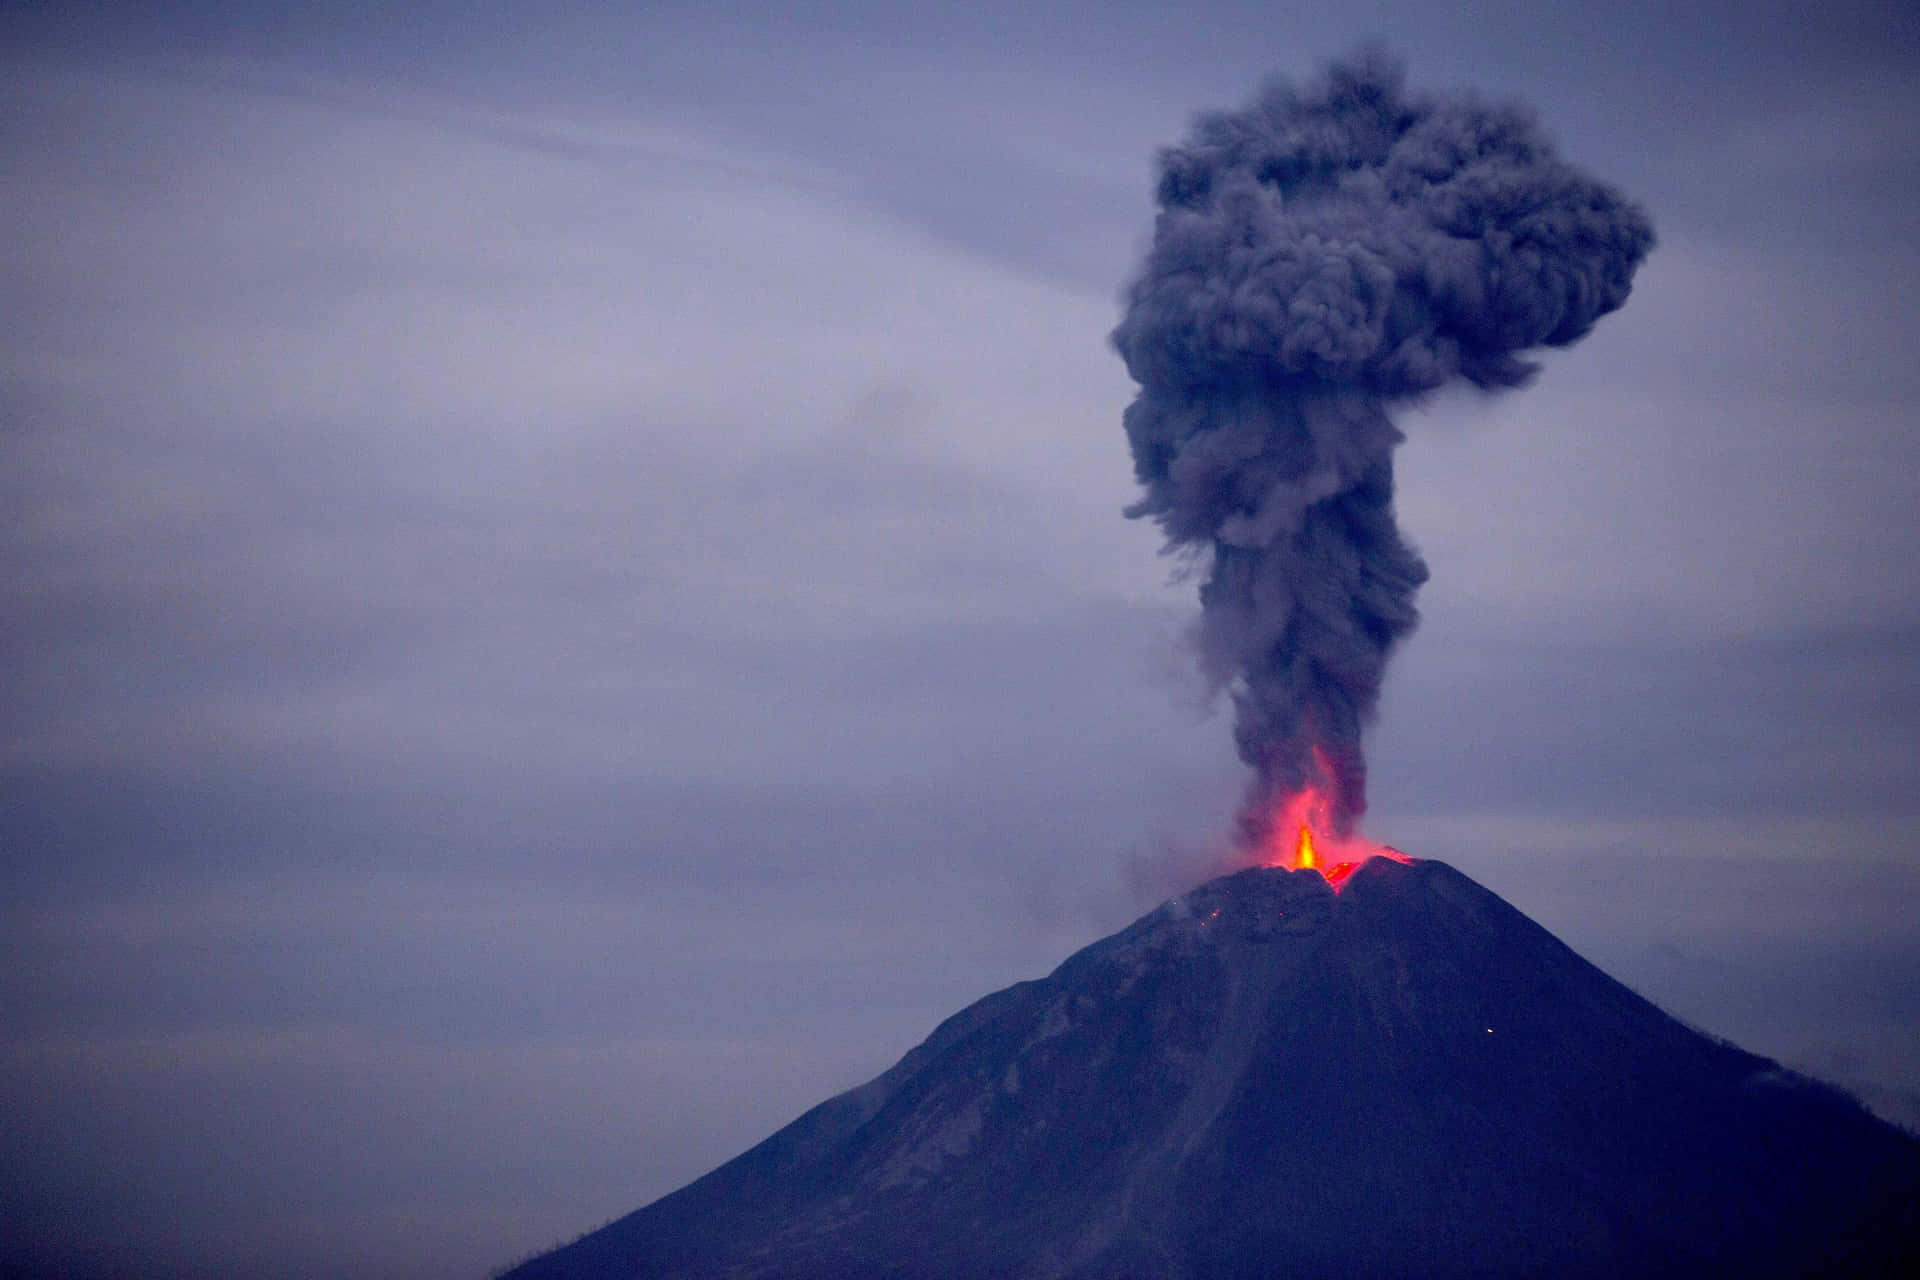 Erupçãovulcânica De Lava Derretida Com Formas Hipnotizantes E Cores Vibrantes